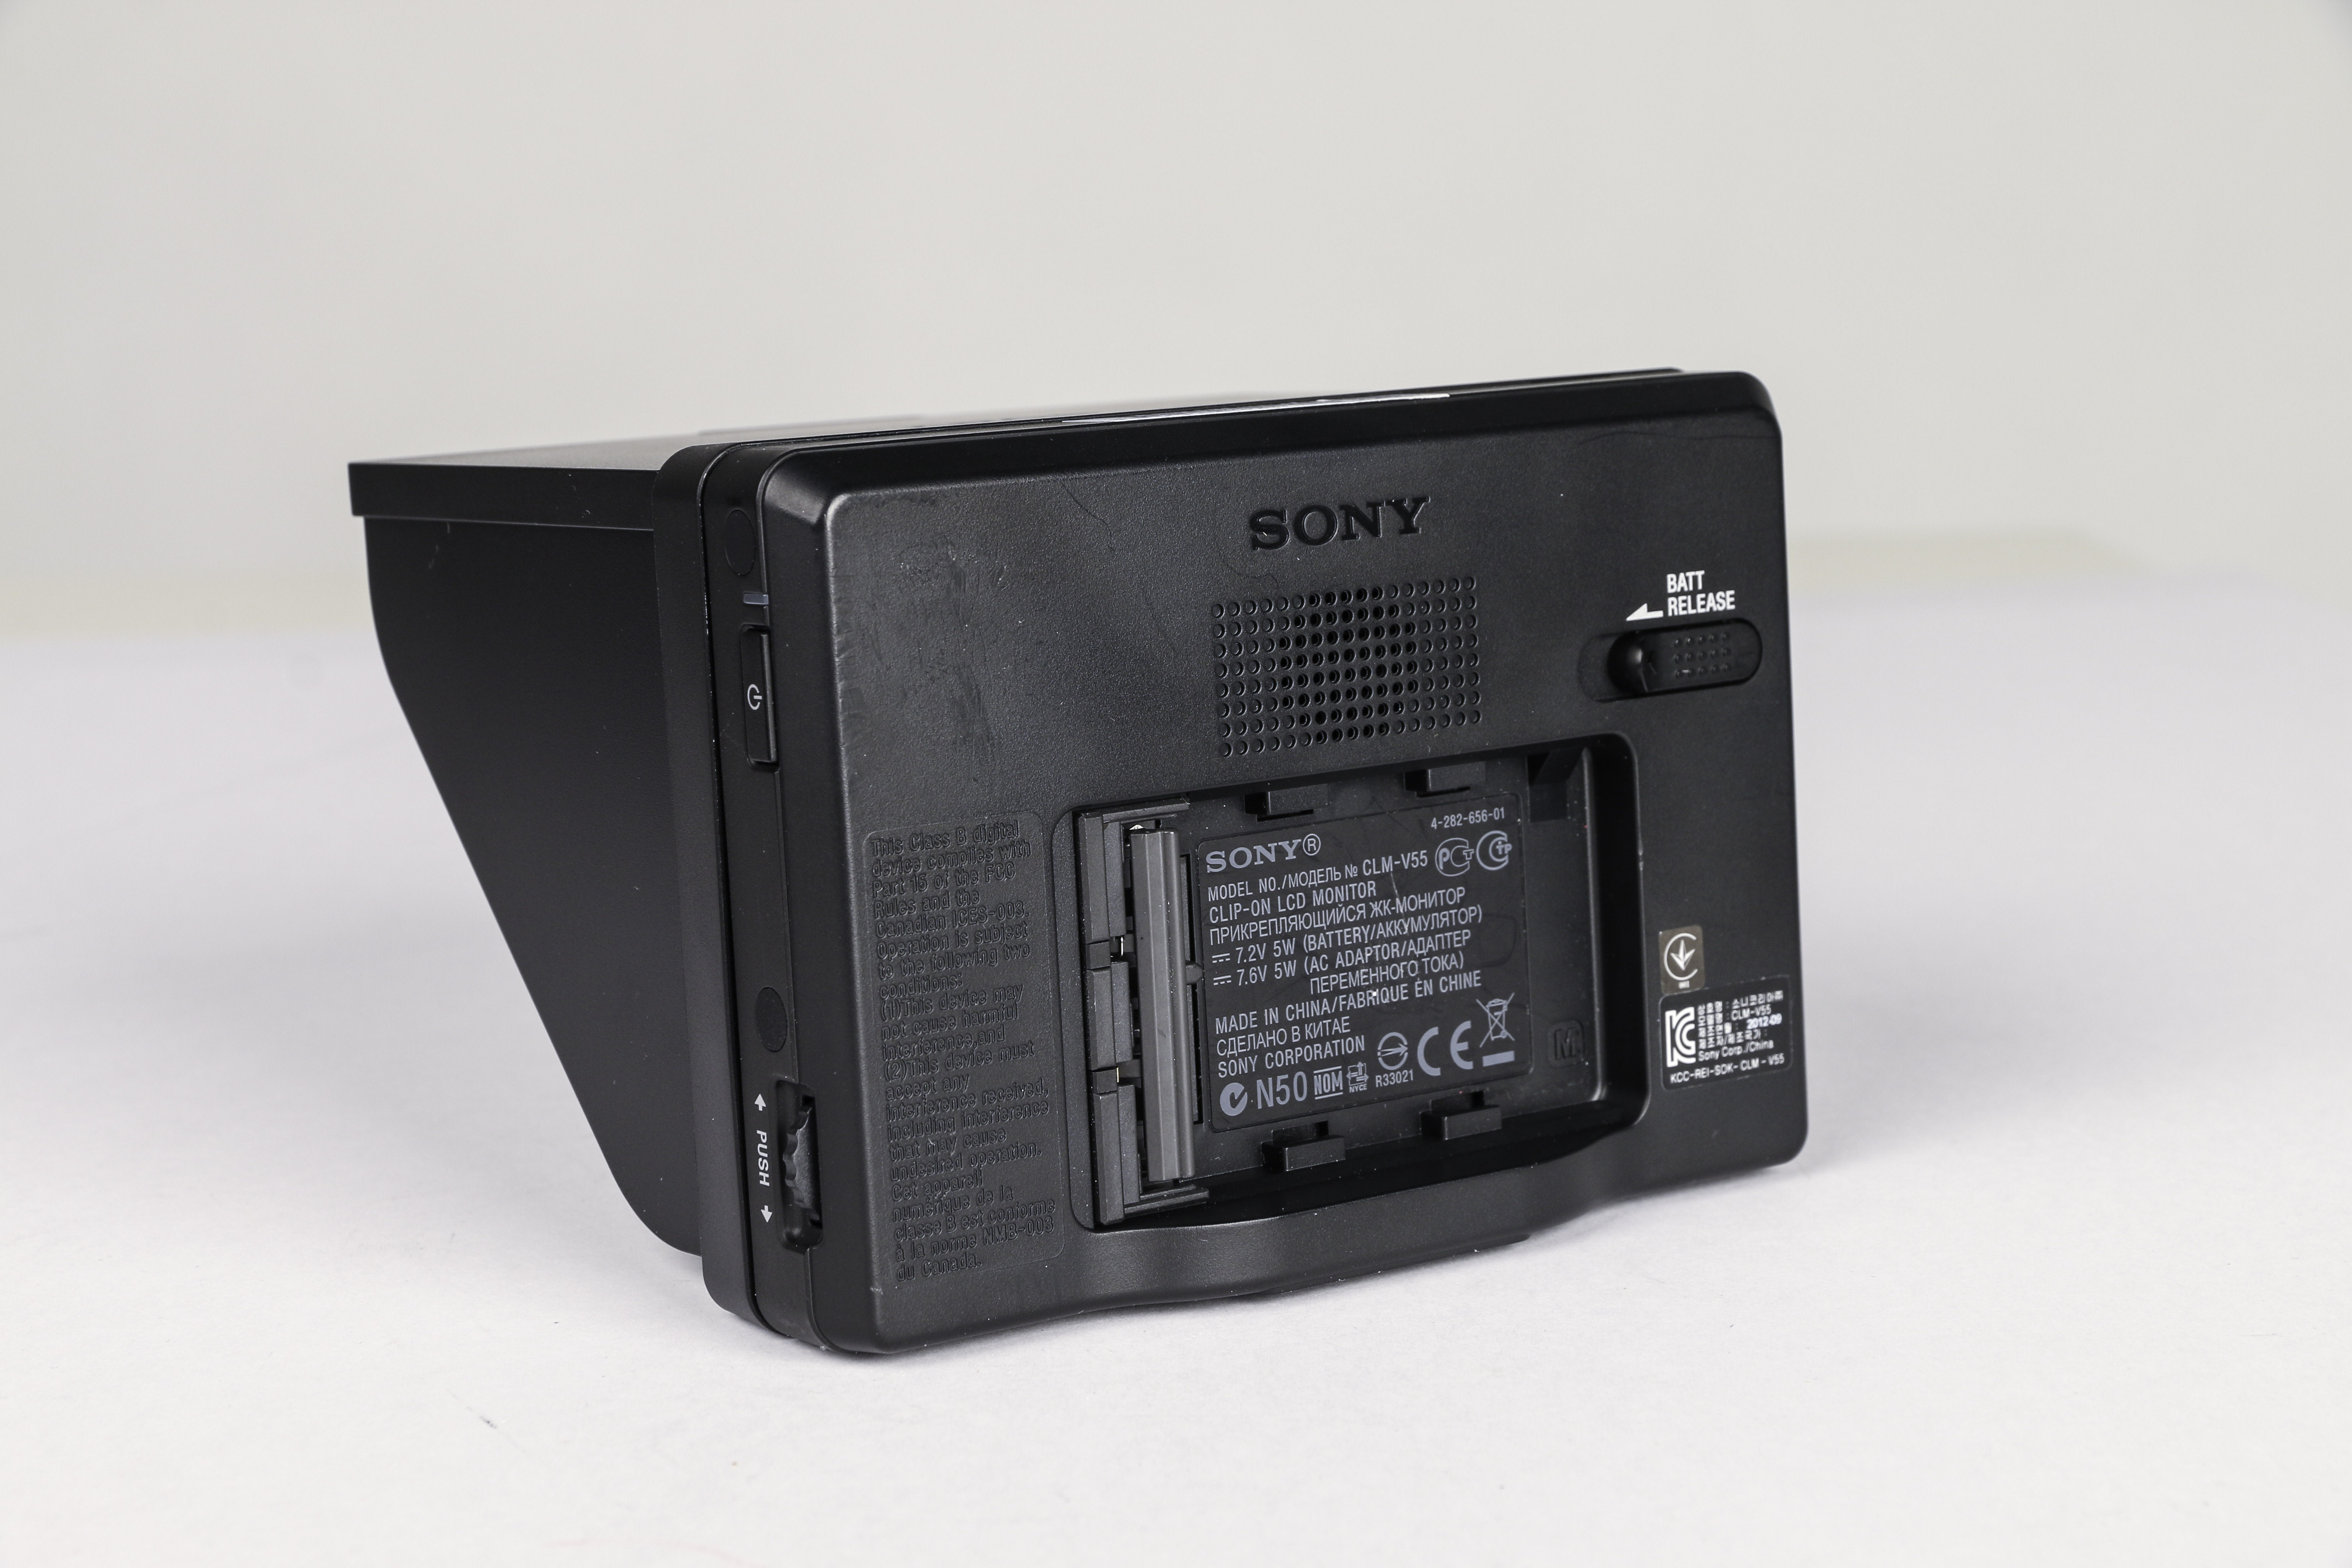 Sony CLM-V55 gebraucht Bild 03